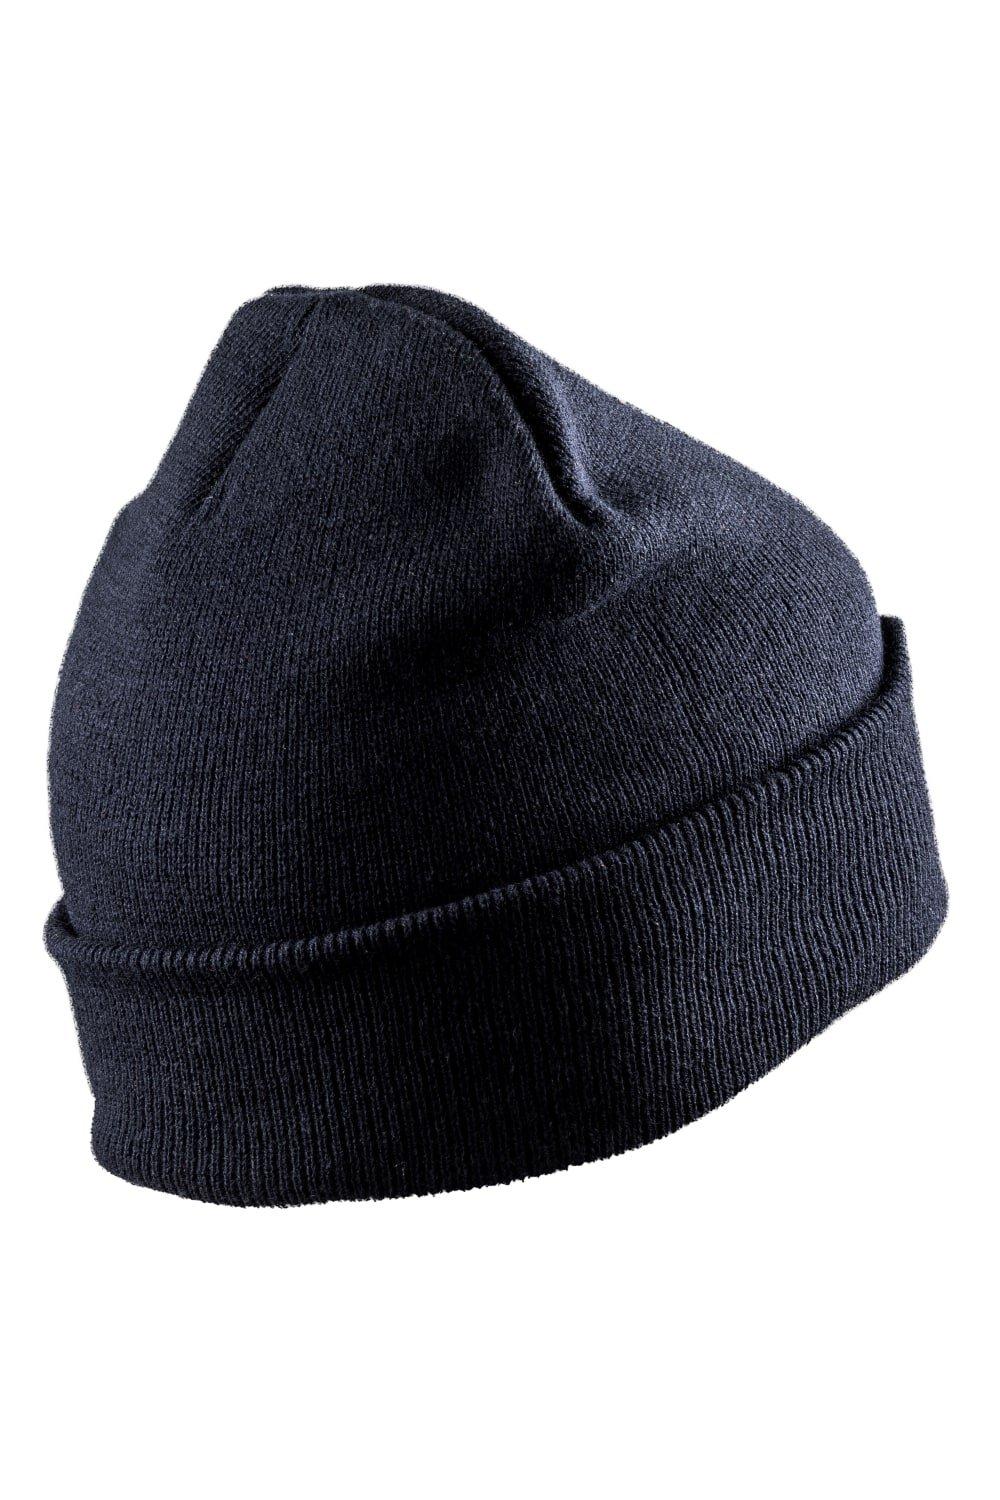 Зимняя шапка Thinsulate для печати Result, темно-синий перчатки трикотажные акрил цвет оранжевый двойная манжета россия сибртех